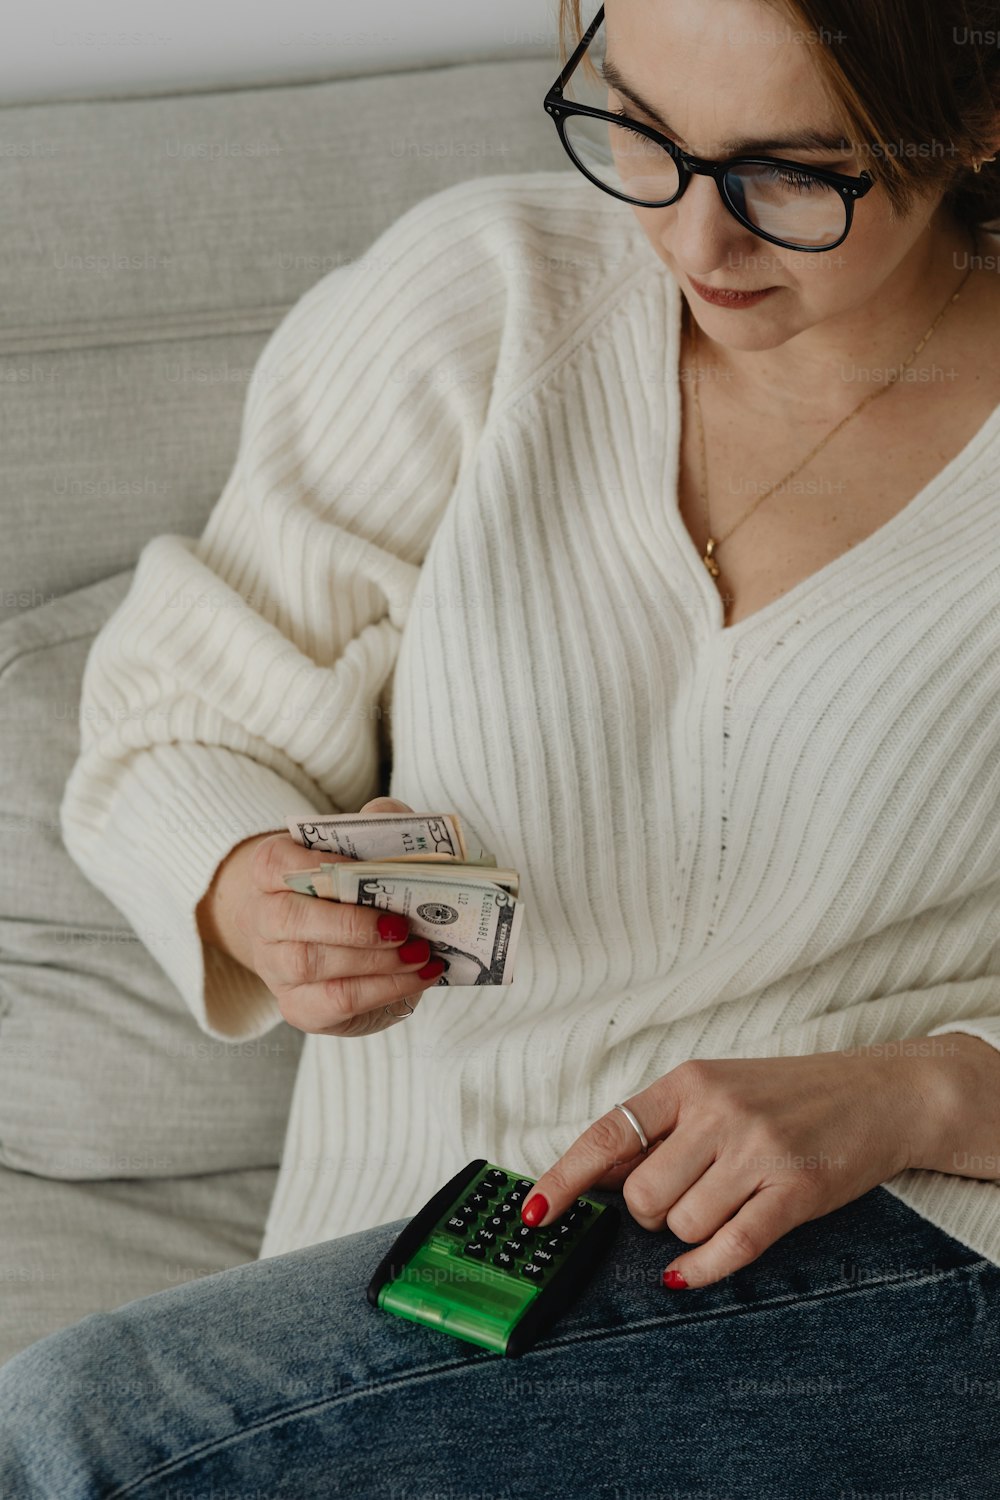 Une femme assise sur un canapé tenant de l’argent et un téléphone portable